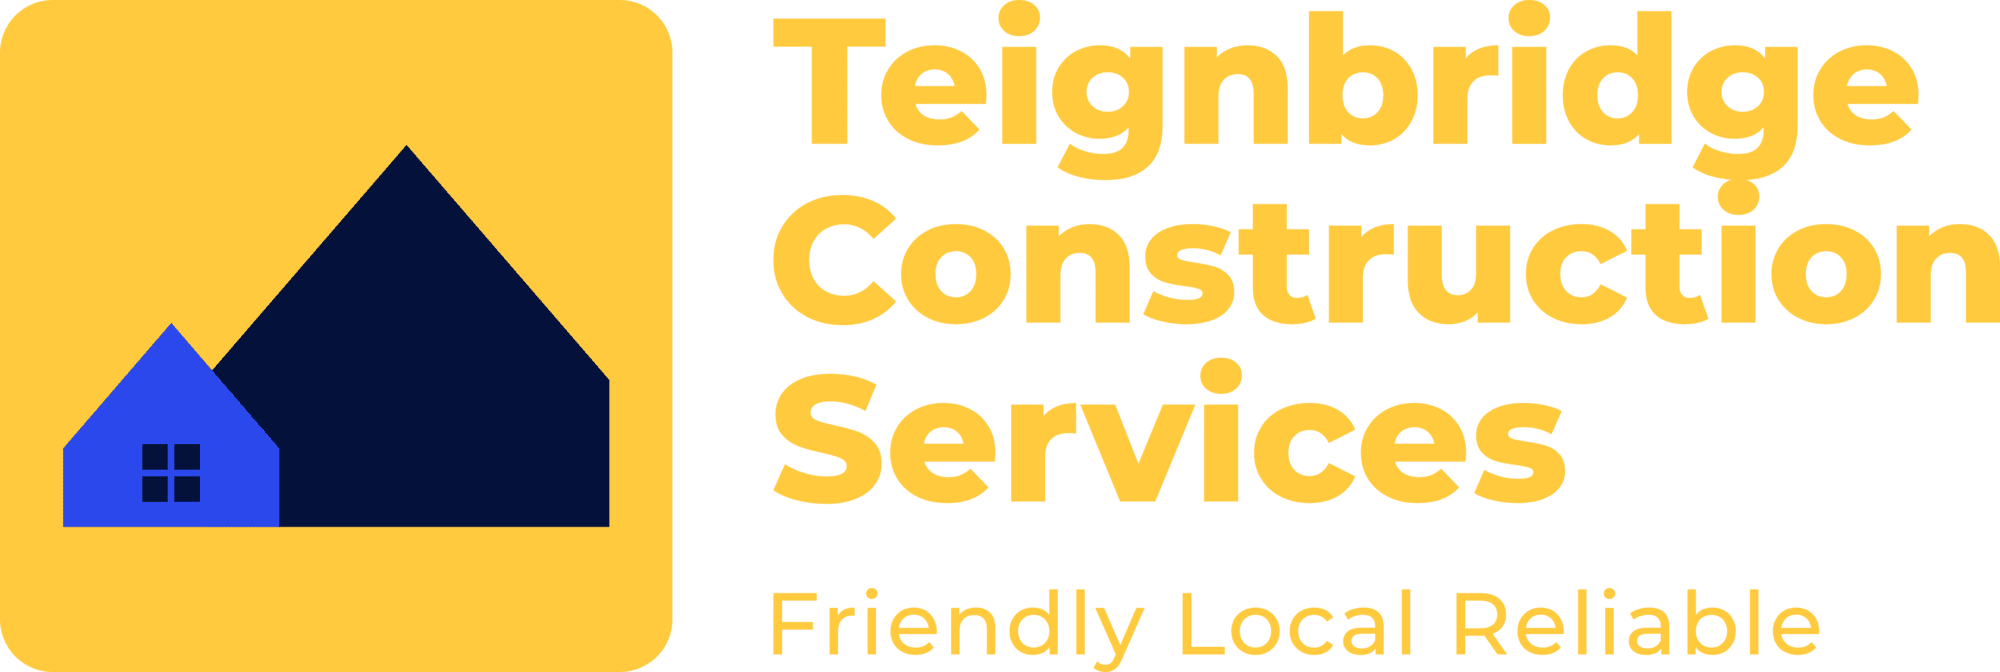 Teignbridge Construction Services